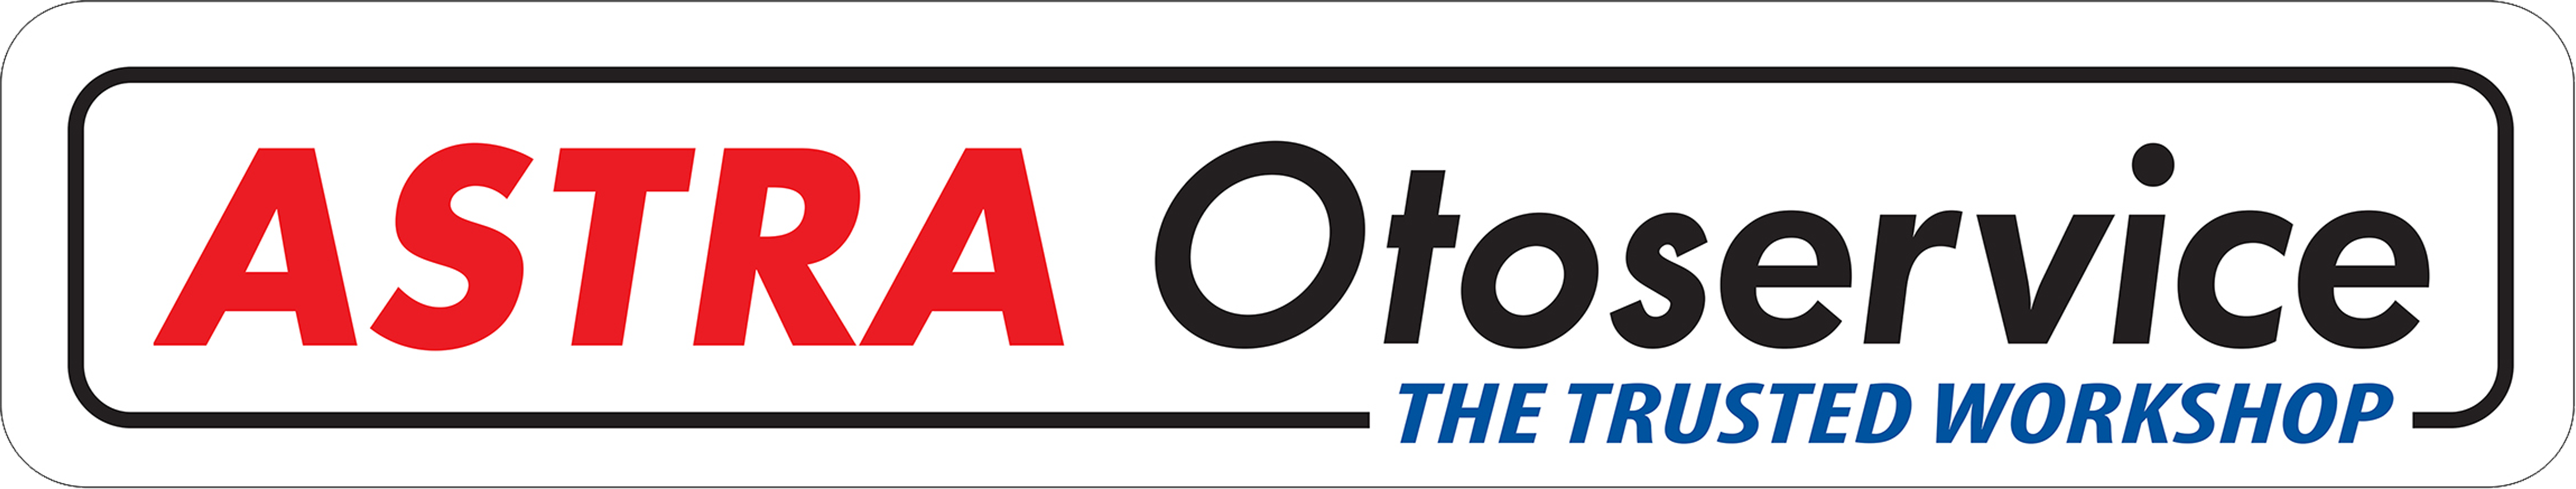 Logo Astra Otoservice